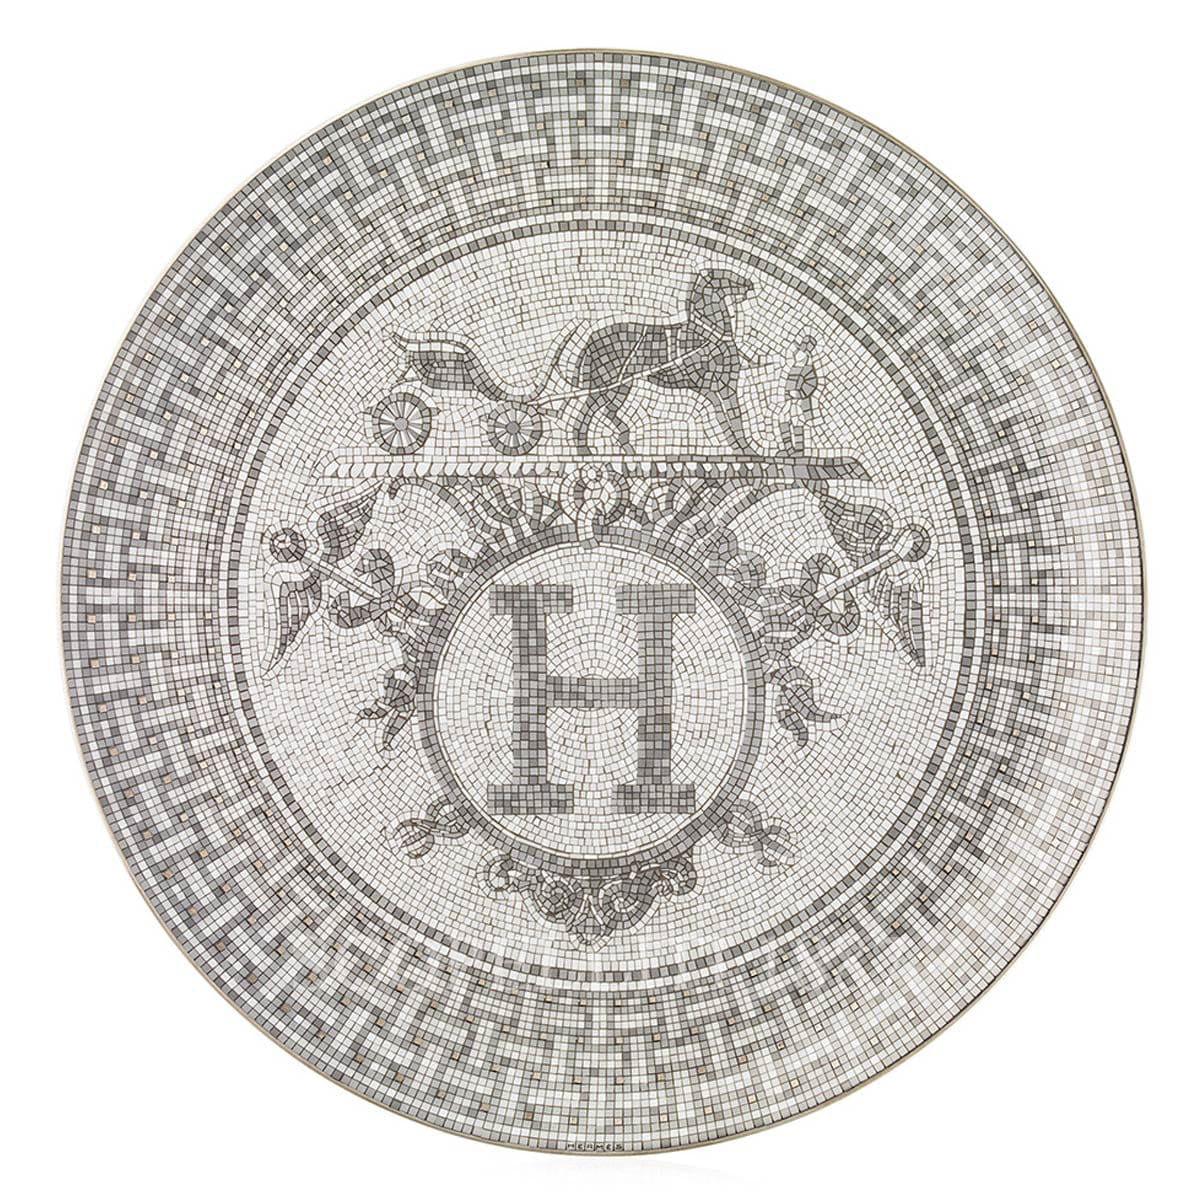 Hermes Mosaique au 24 platinum Small Box - SCOPELLITI 1887